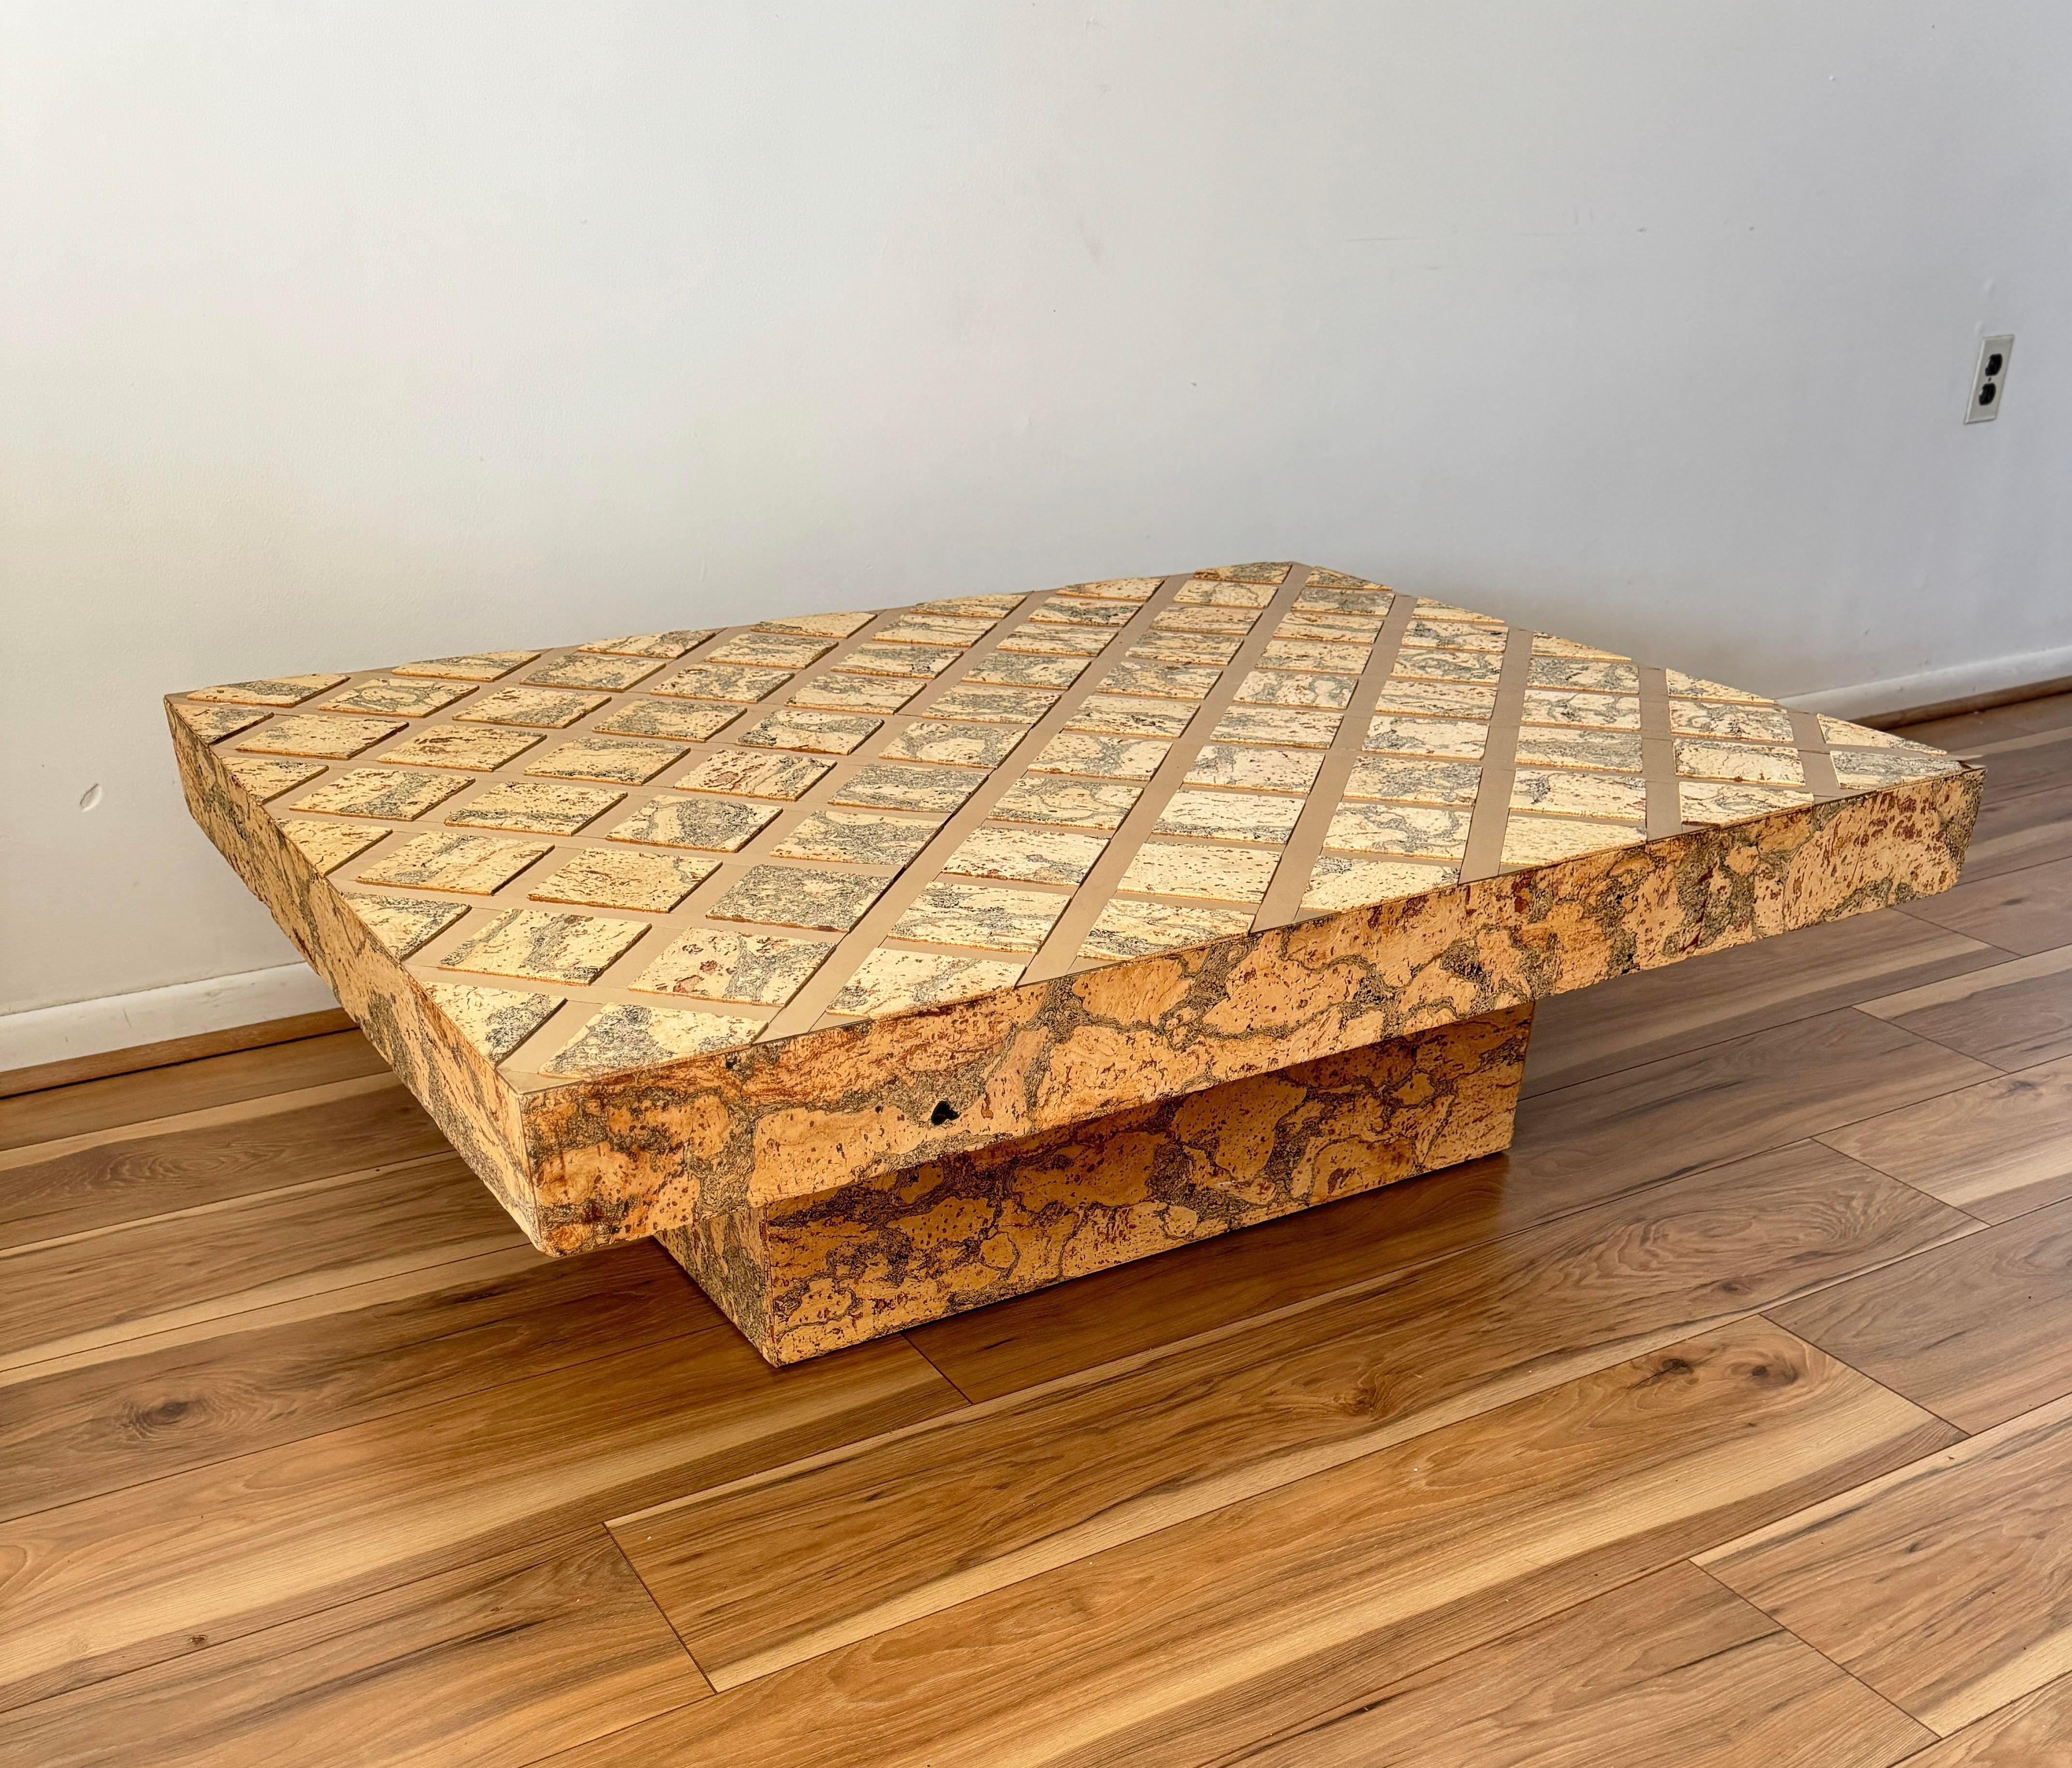 Cette magnifique table basse vintage en liège attire l'attention par le contraste saisissant entre la texture naturelle et terreuse du liège et le luxe prononcé de l'incrustation dorée.
Le contraste saisissant entre ces éléments crée une pièce